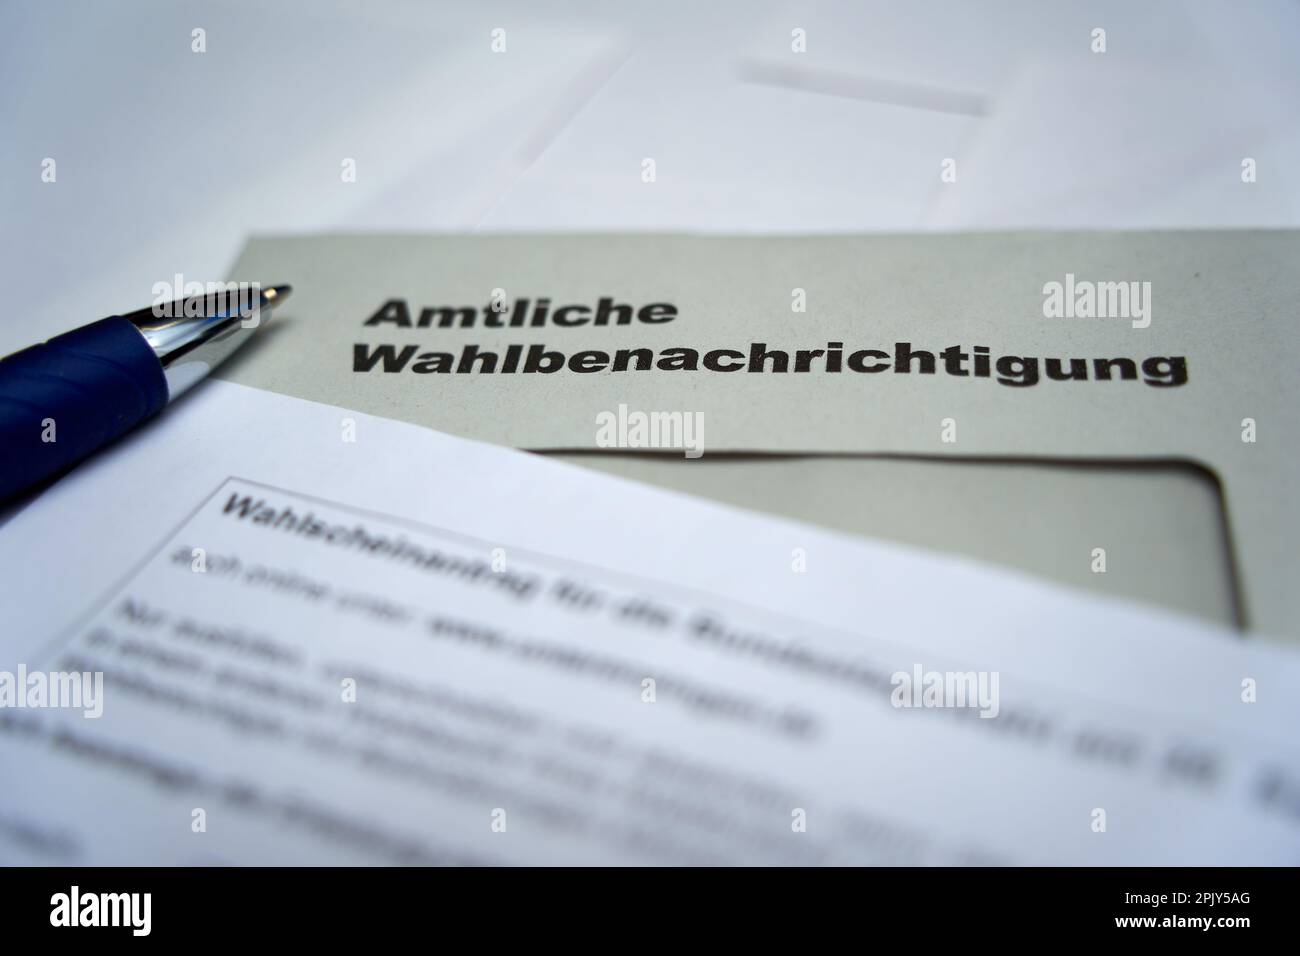 Stoccarda, Germania - 28 agosto 2021: Notifica ufficiale delle elezioni (Wahlbenachrichtigung Bundestagswahl) per le elezioni federali in germania. Suggerimento di Foto Stock